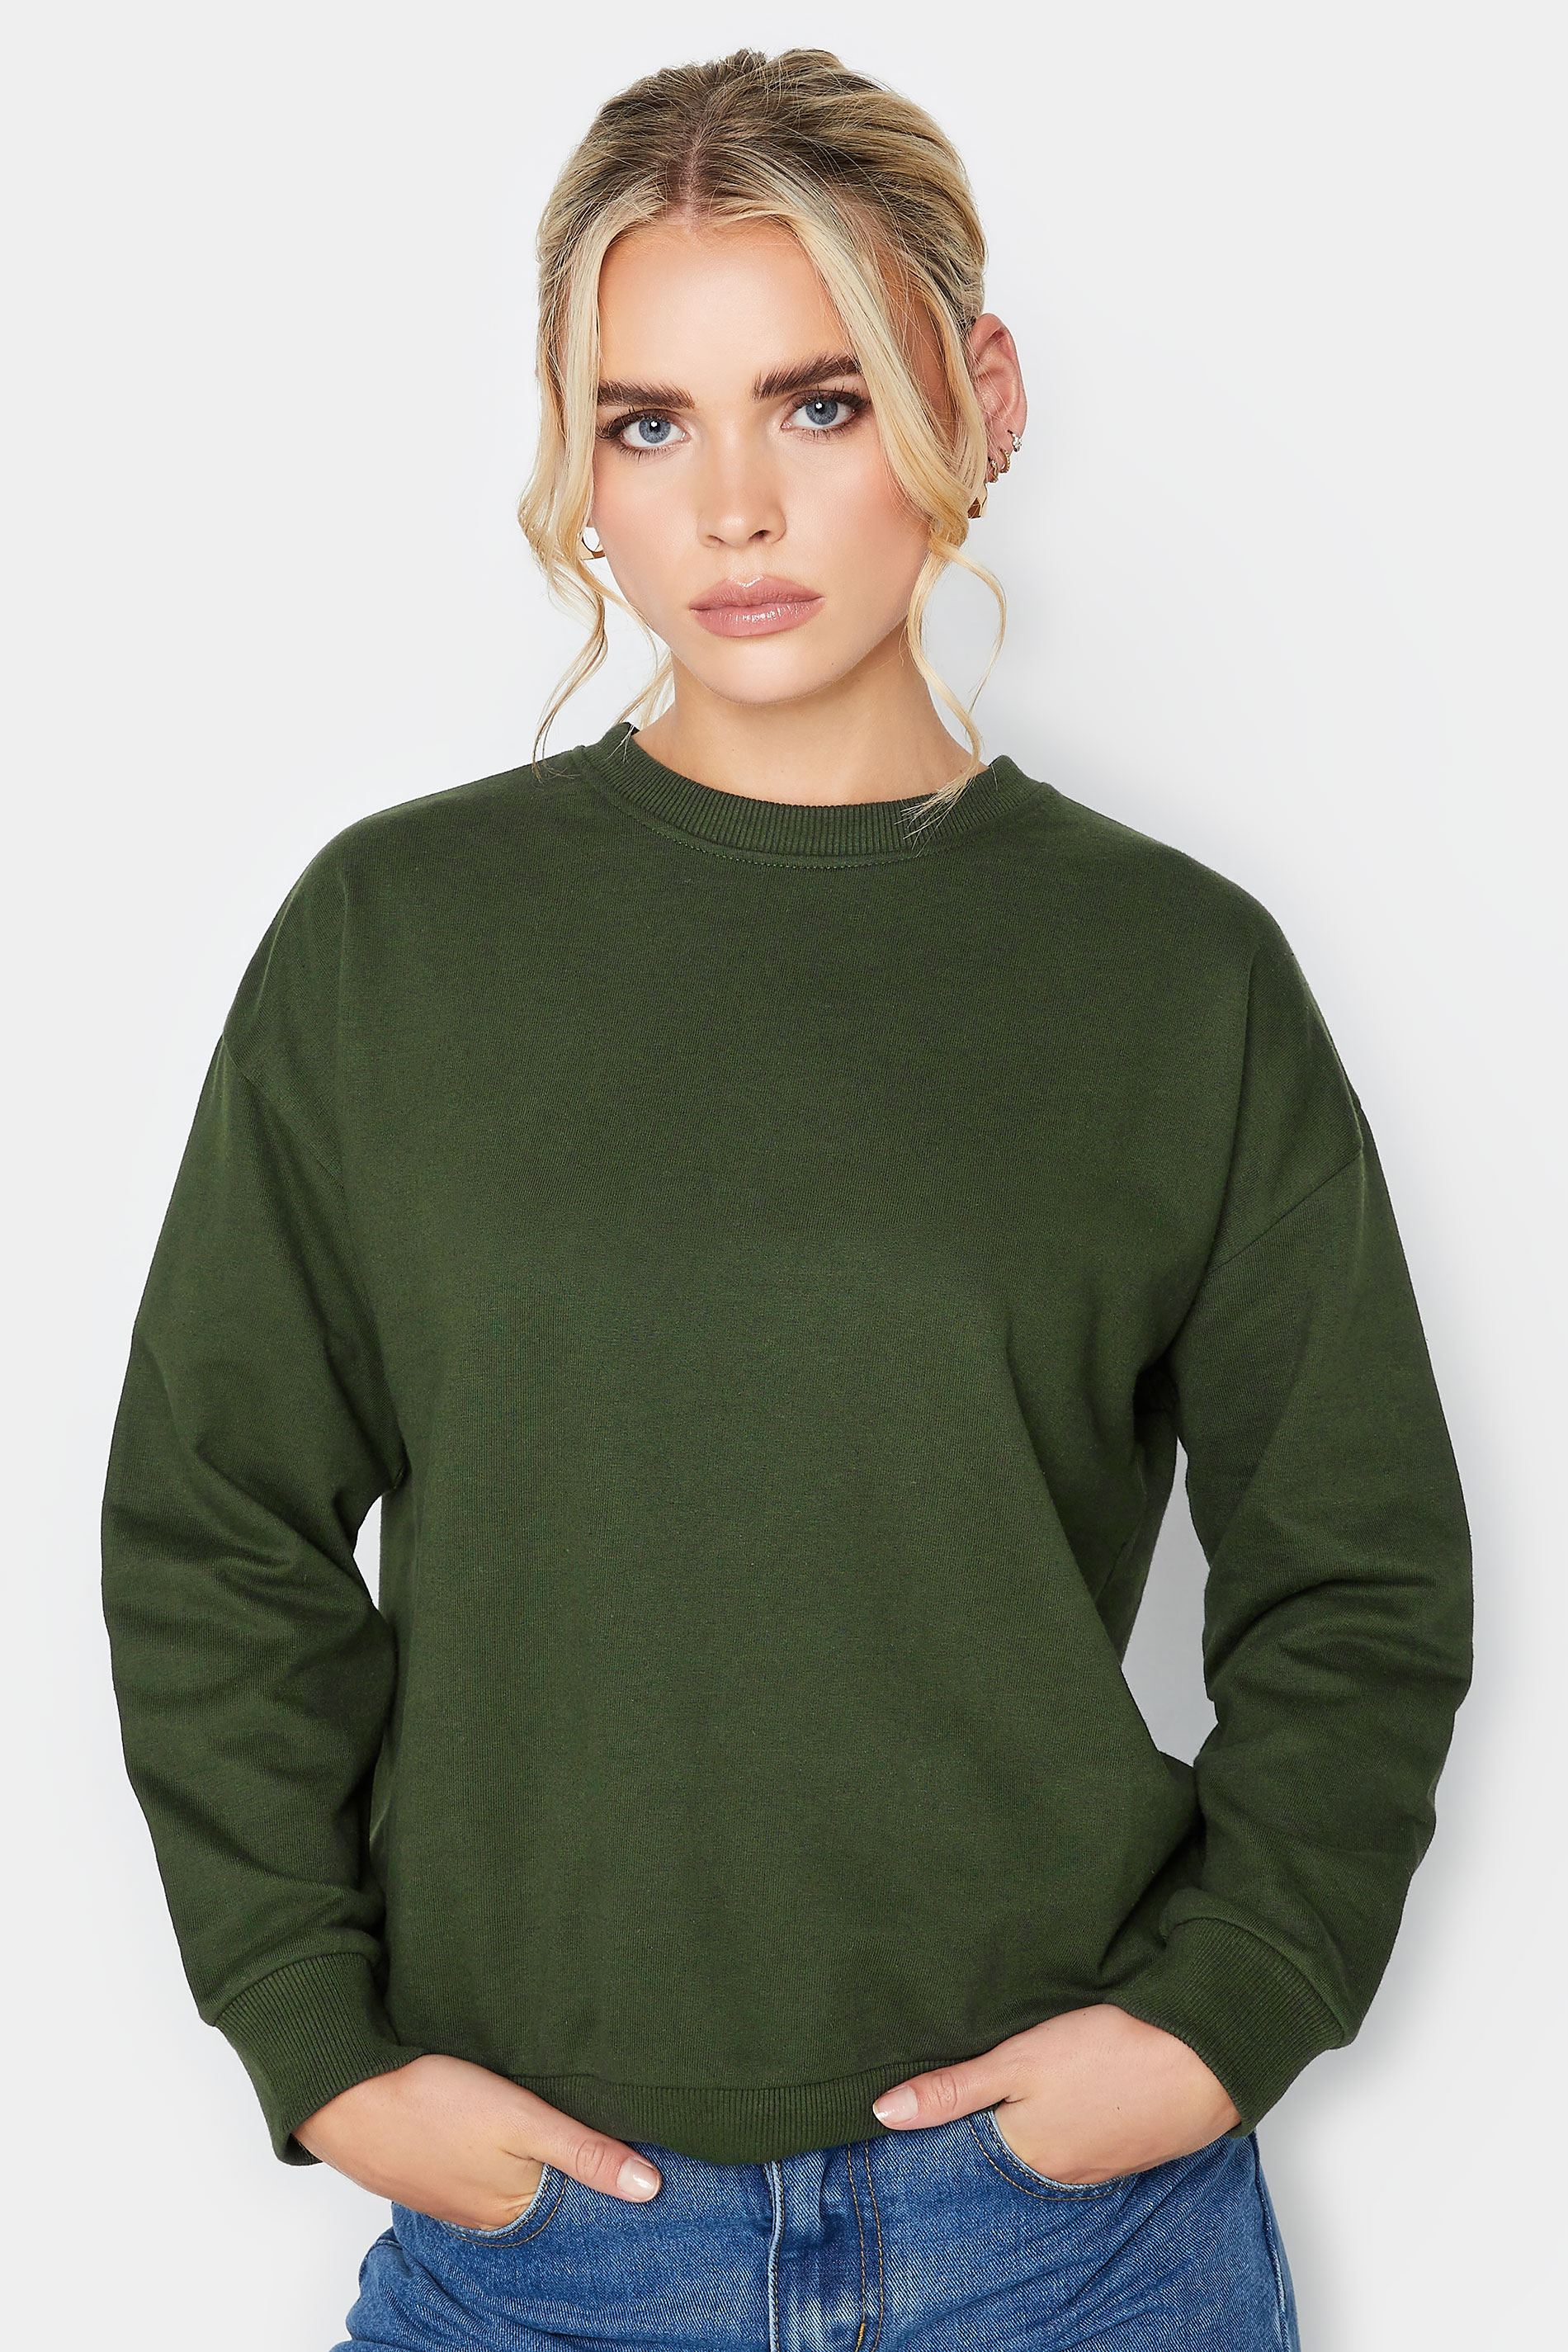 Pixiegirl Green Crew Neck Sweatshirt 8 Pixiegirl | Petite Women's Long Sleeve Tops